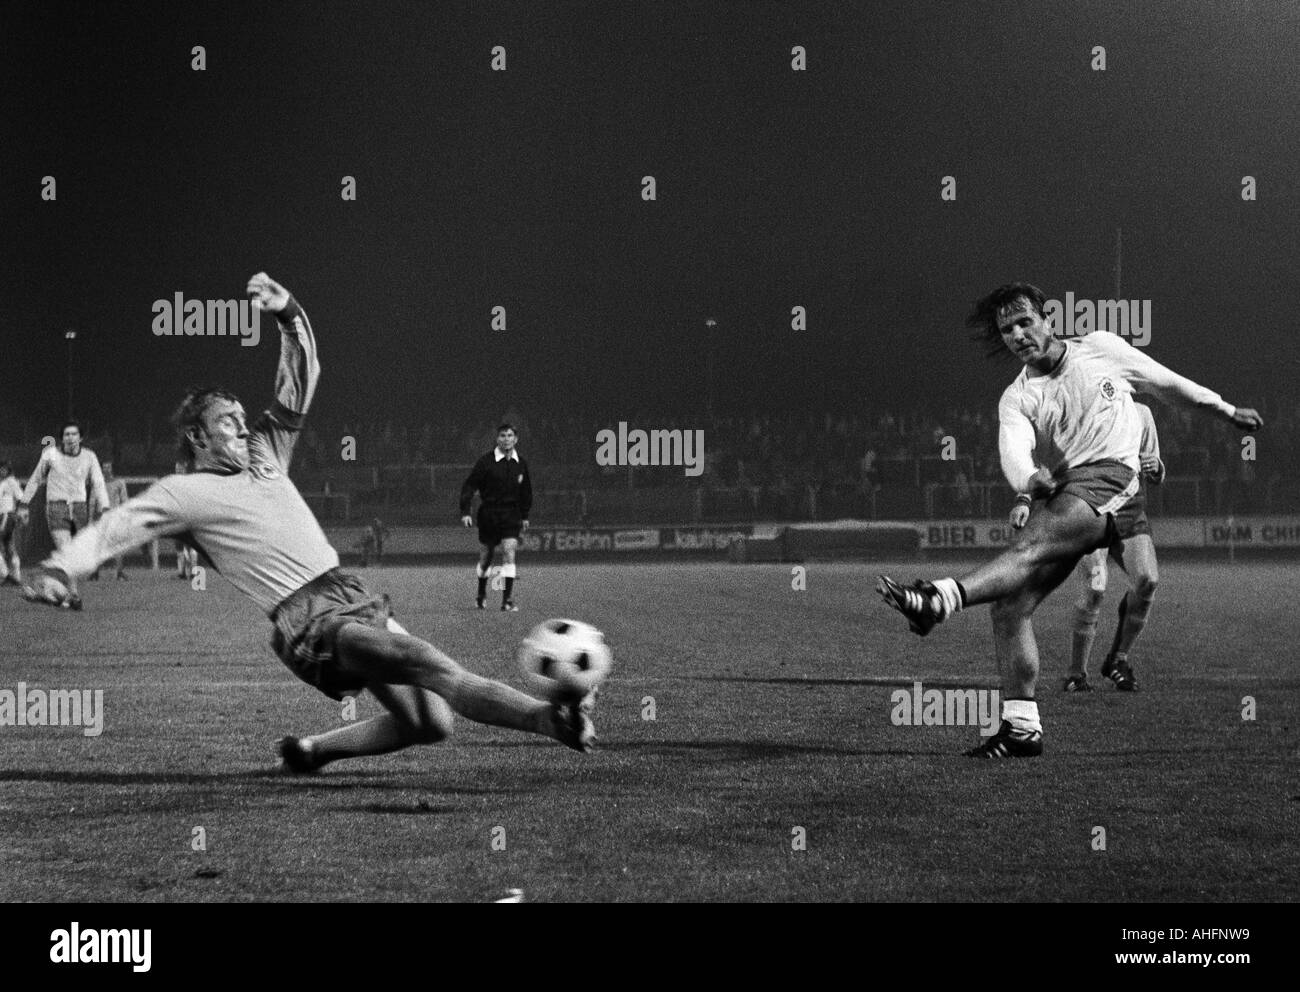 Fußball, Bundesliga, 1972/1973, Rot-Weiss Oberhausen gegen Eintracht Braunschweig 0:1, Niederrhein-Stadion in Oberhausen, Szene des Spiels, Schuss auf das Tor von Herbert Liedtke (RWO) rechts, links Peter Kaack (BS) Stockfoto